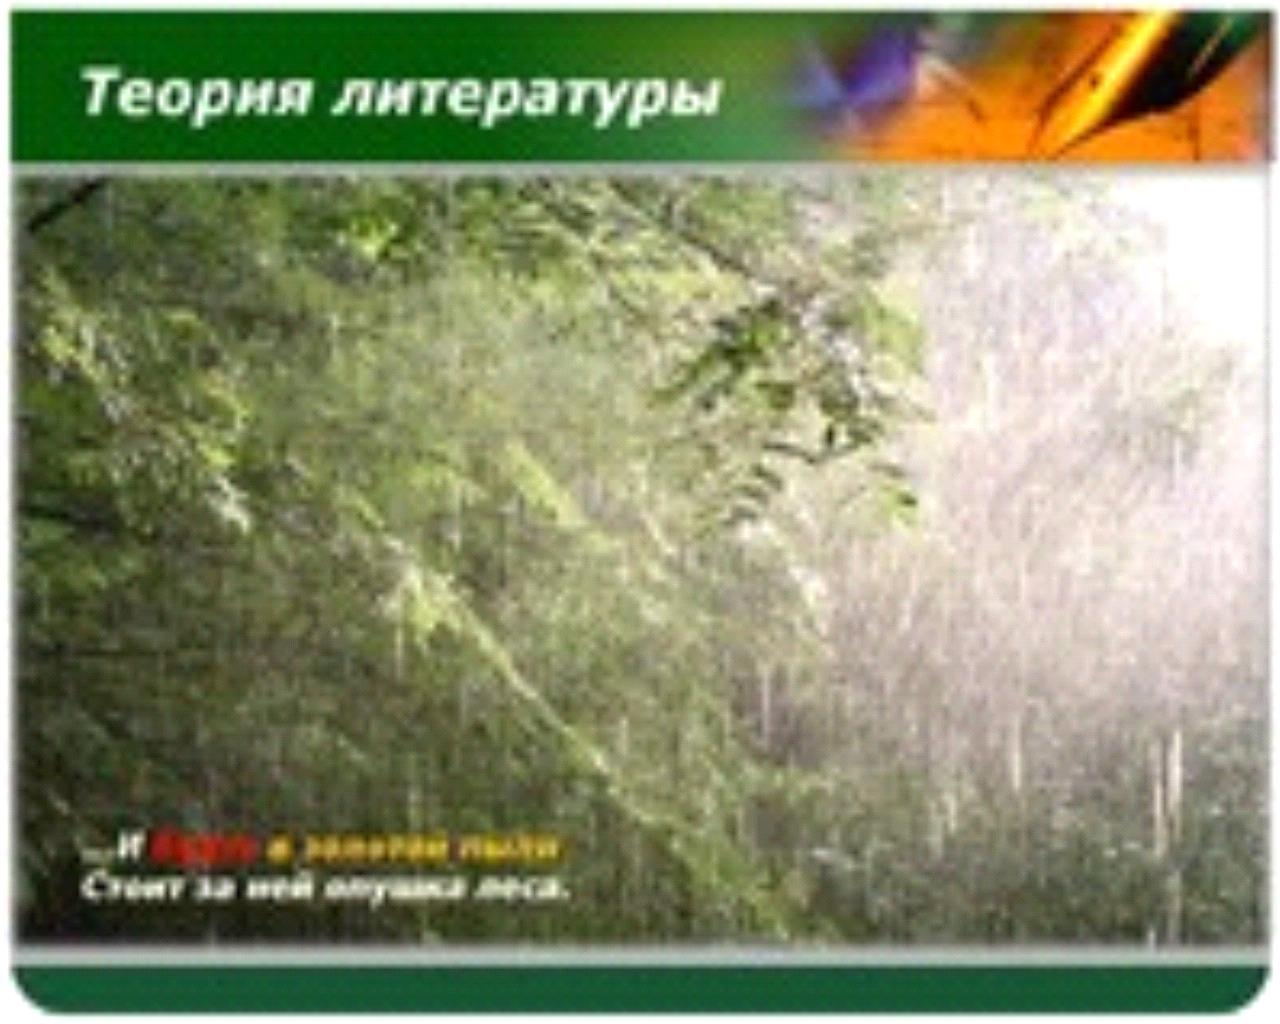 Иллюстрация к стиху весенний дождь а.а.Фет